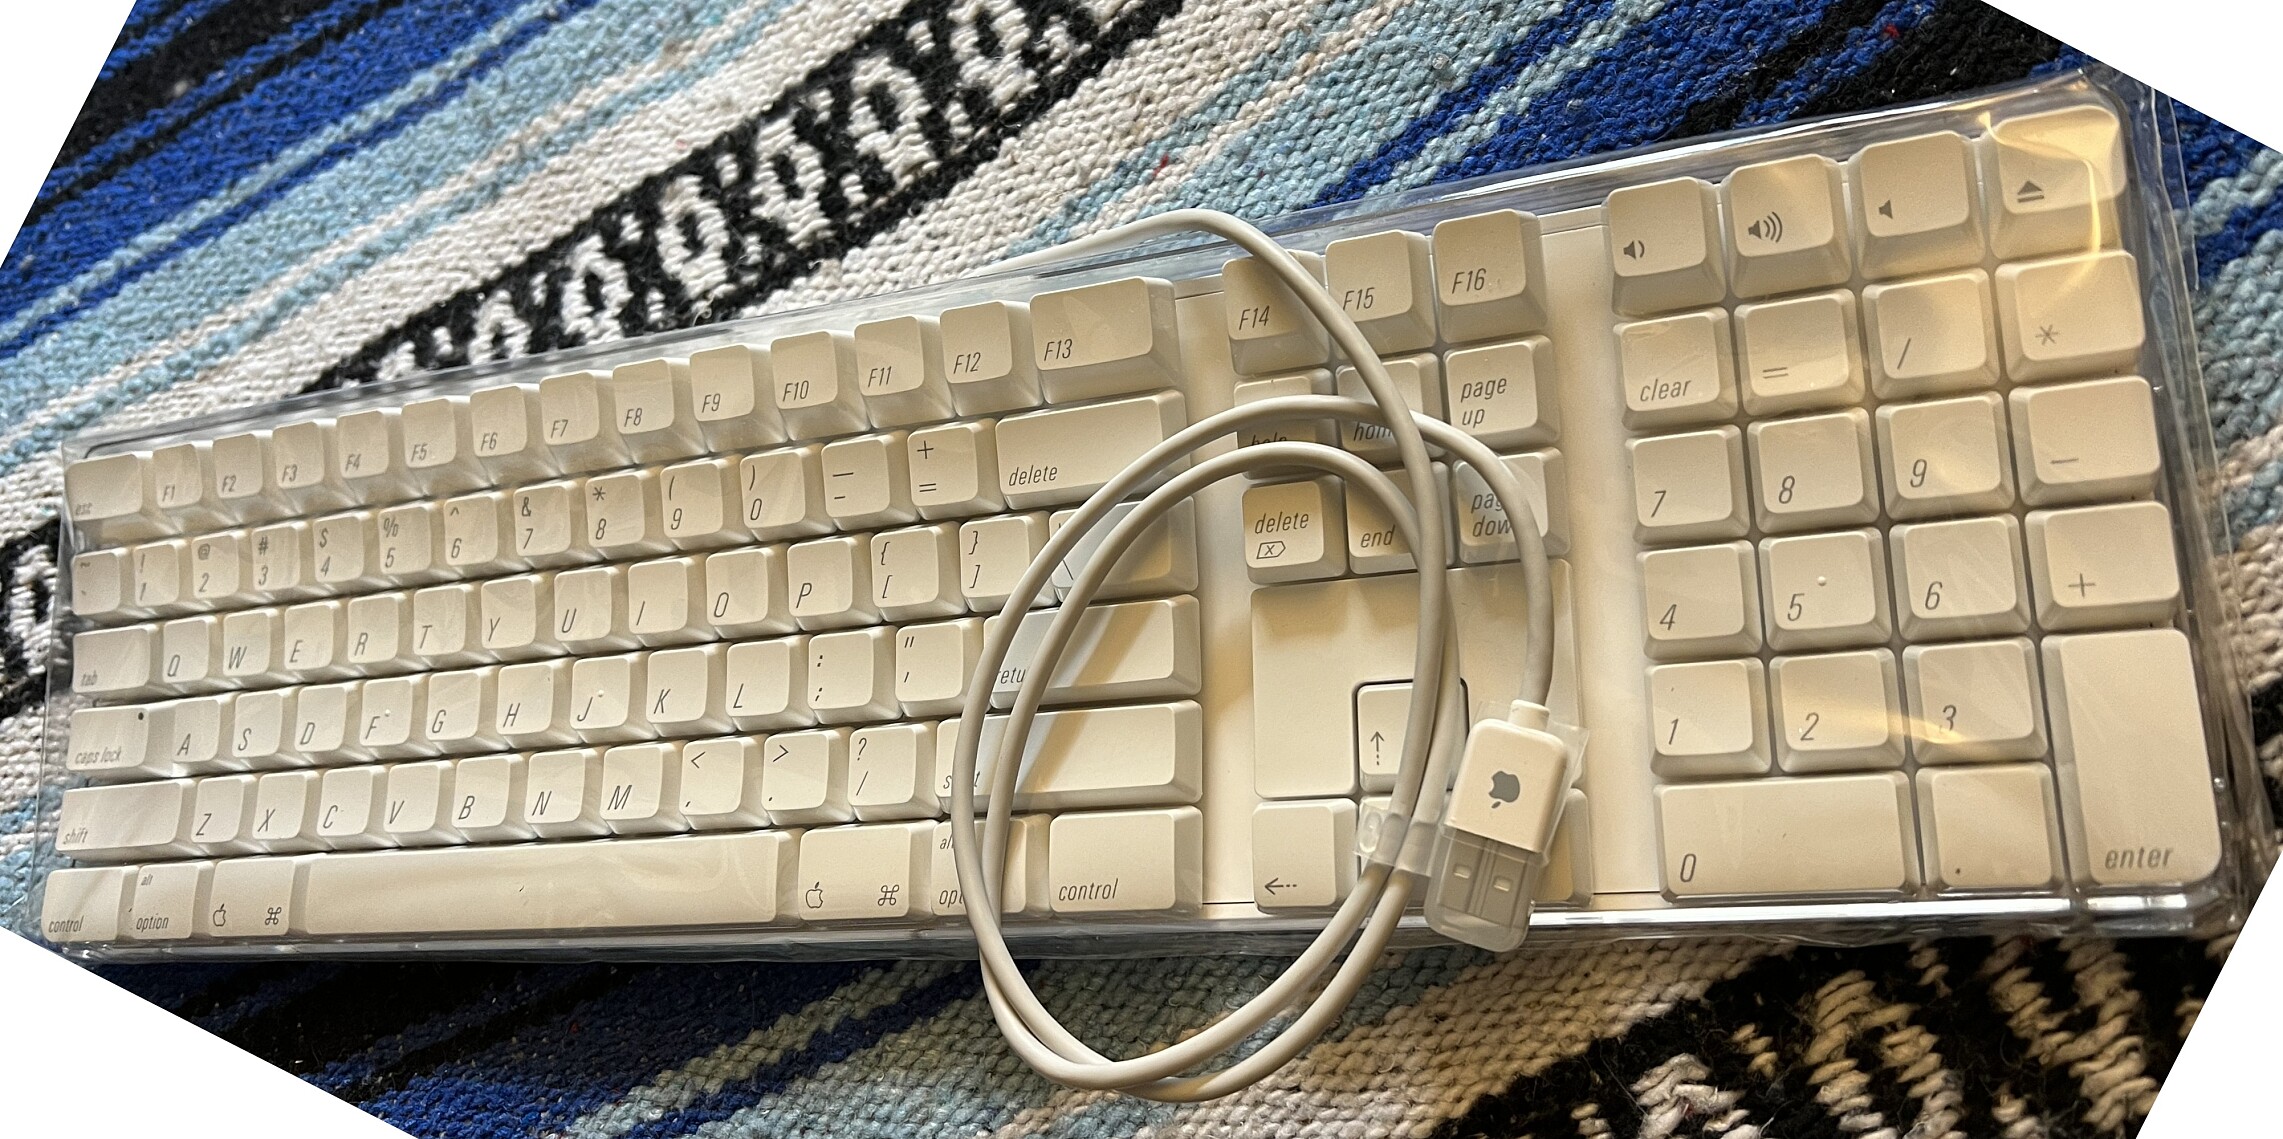 Apple pro keyboard A1048 Sq9m-s1600